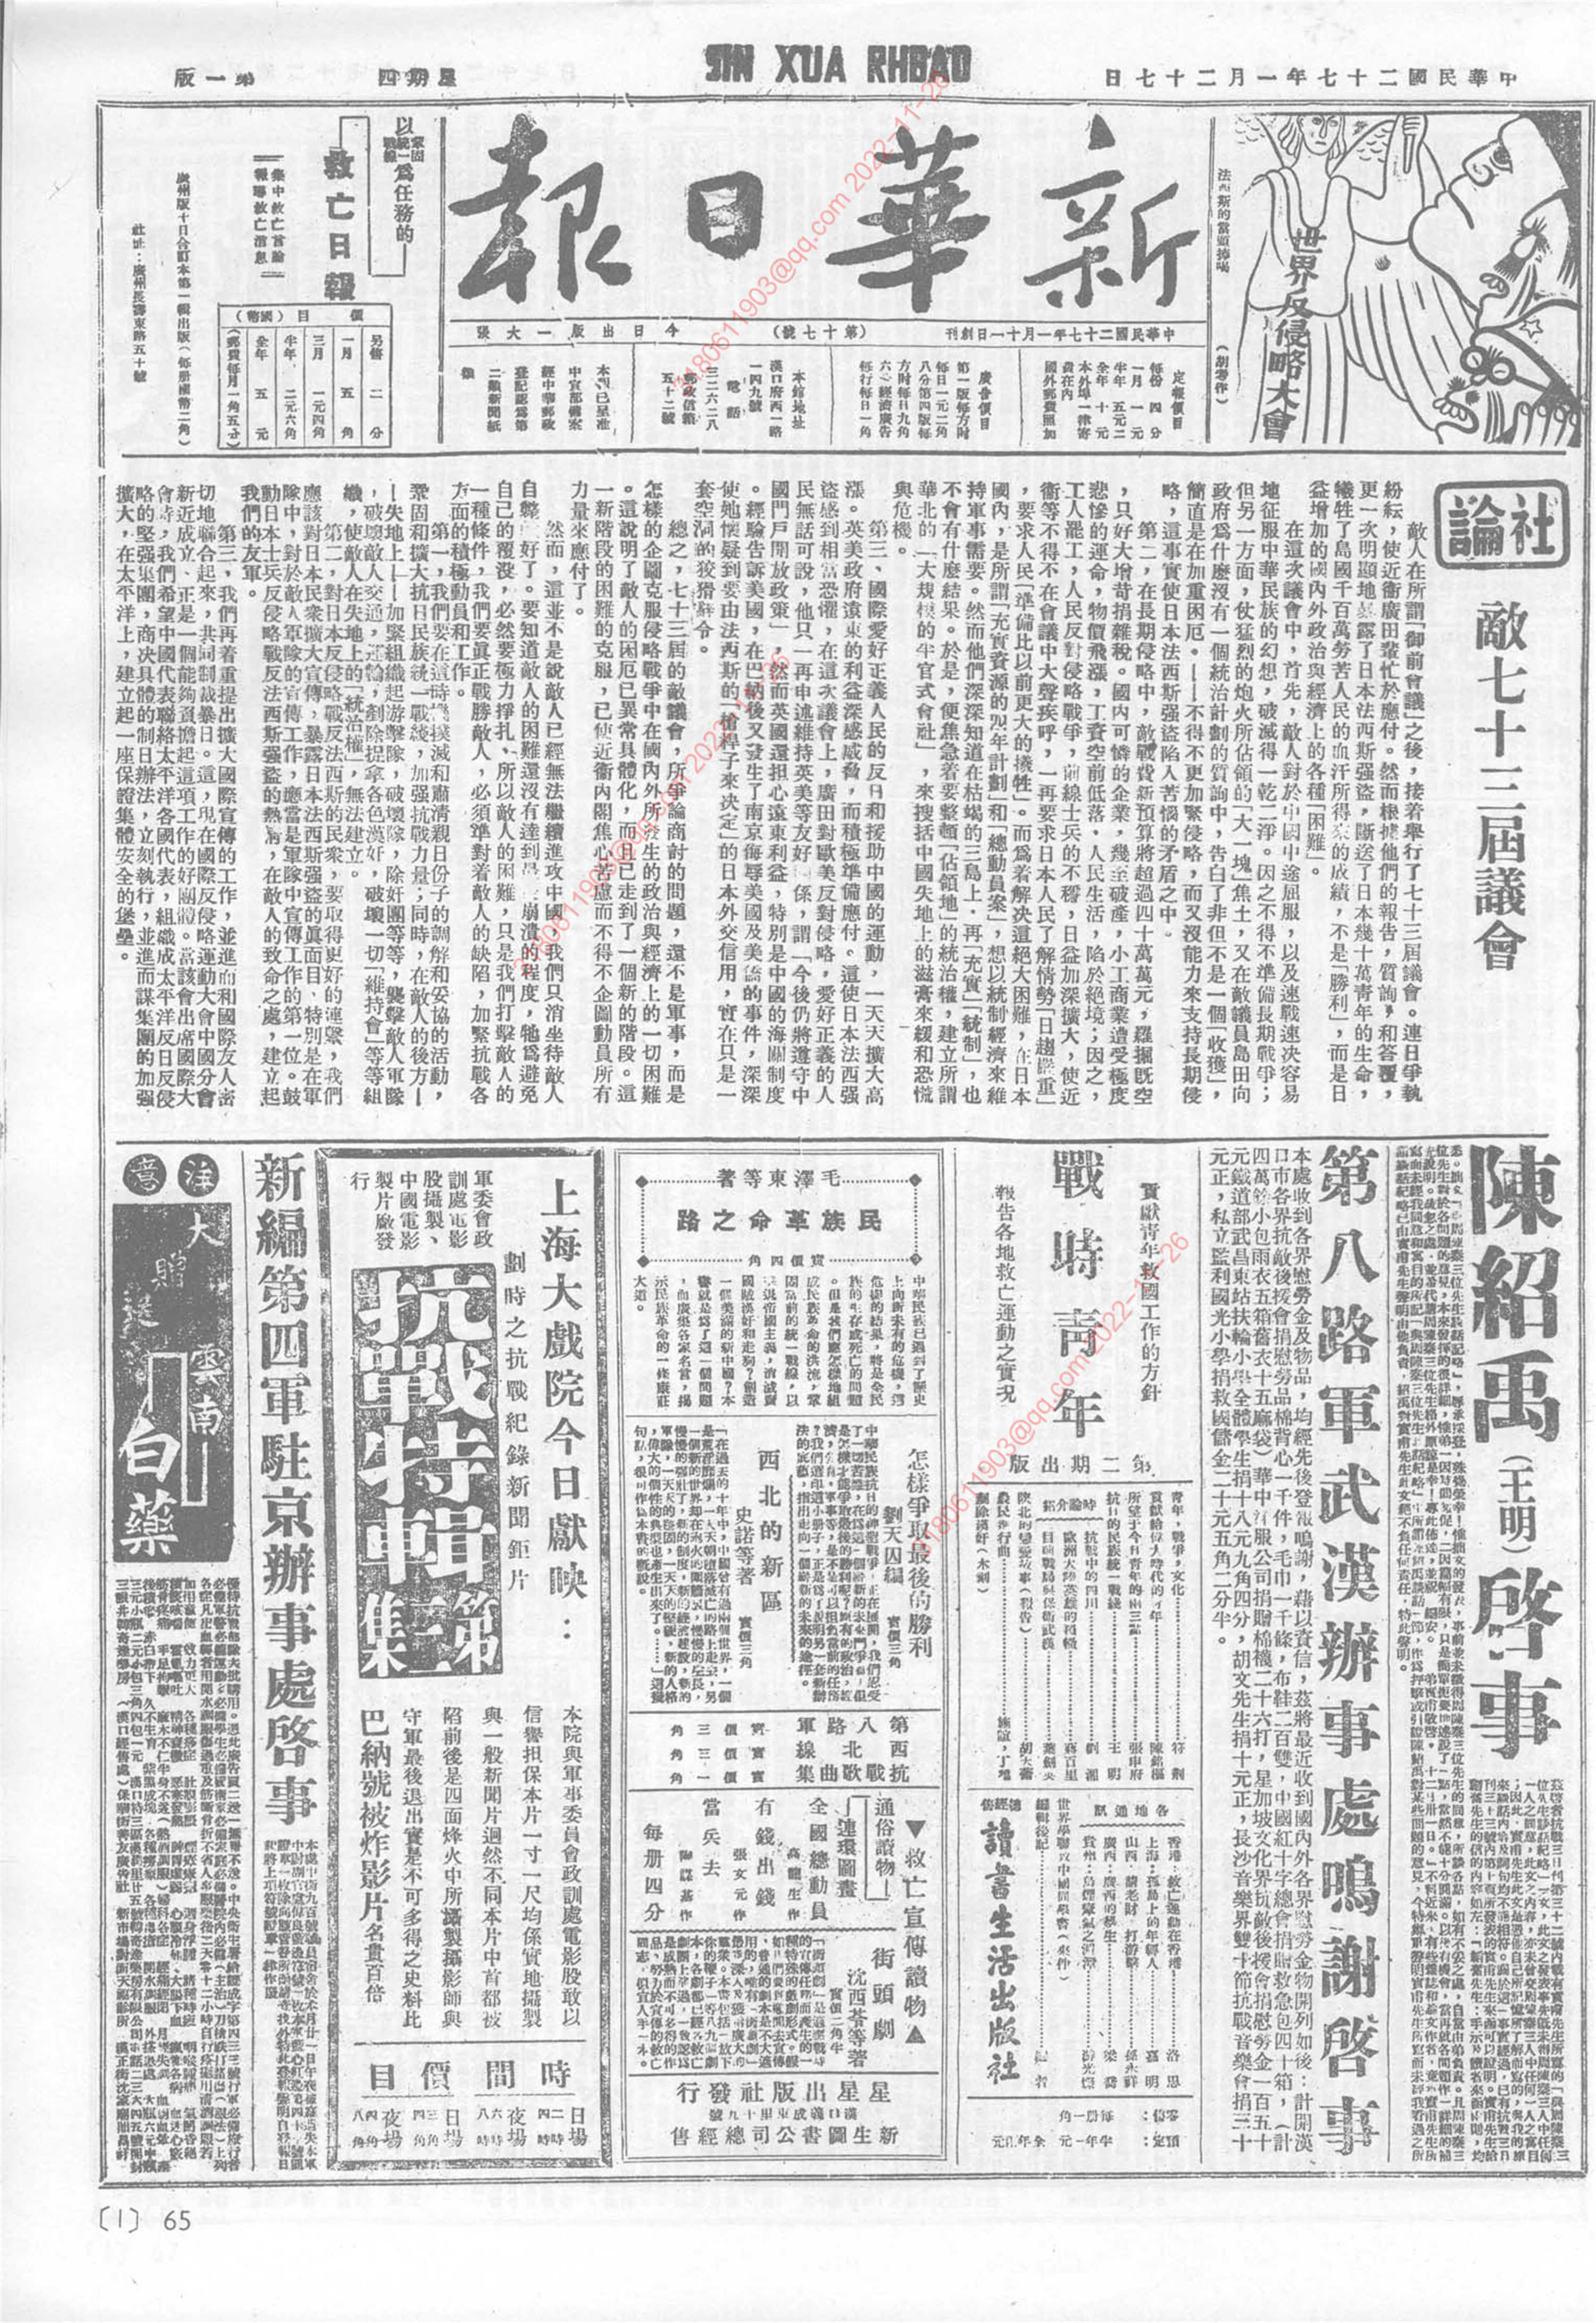 《新华日报》1938年1月27日